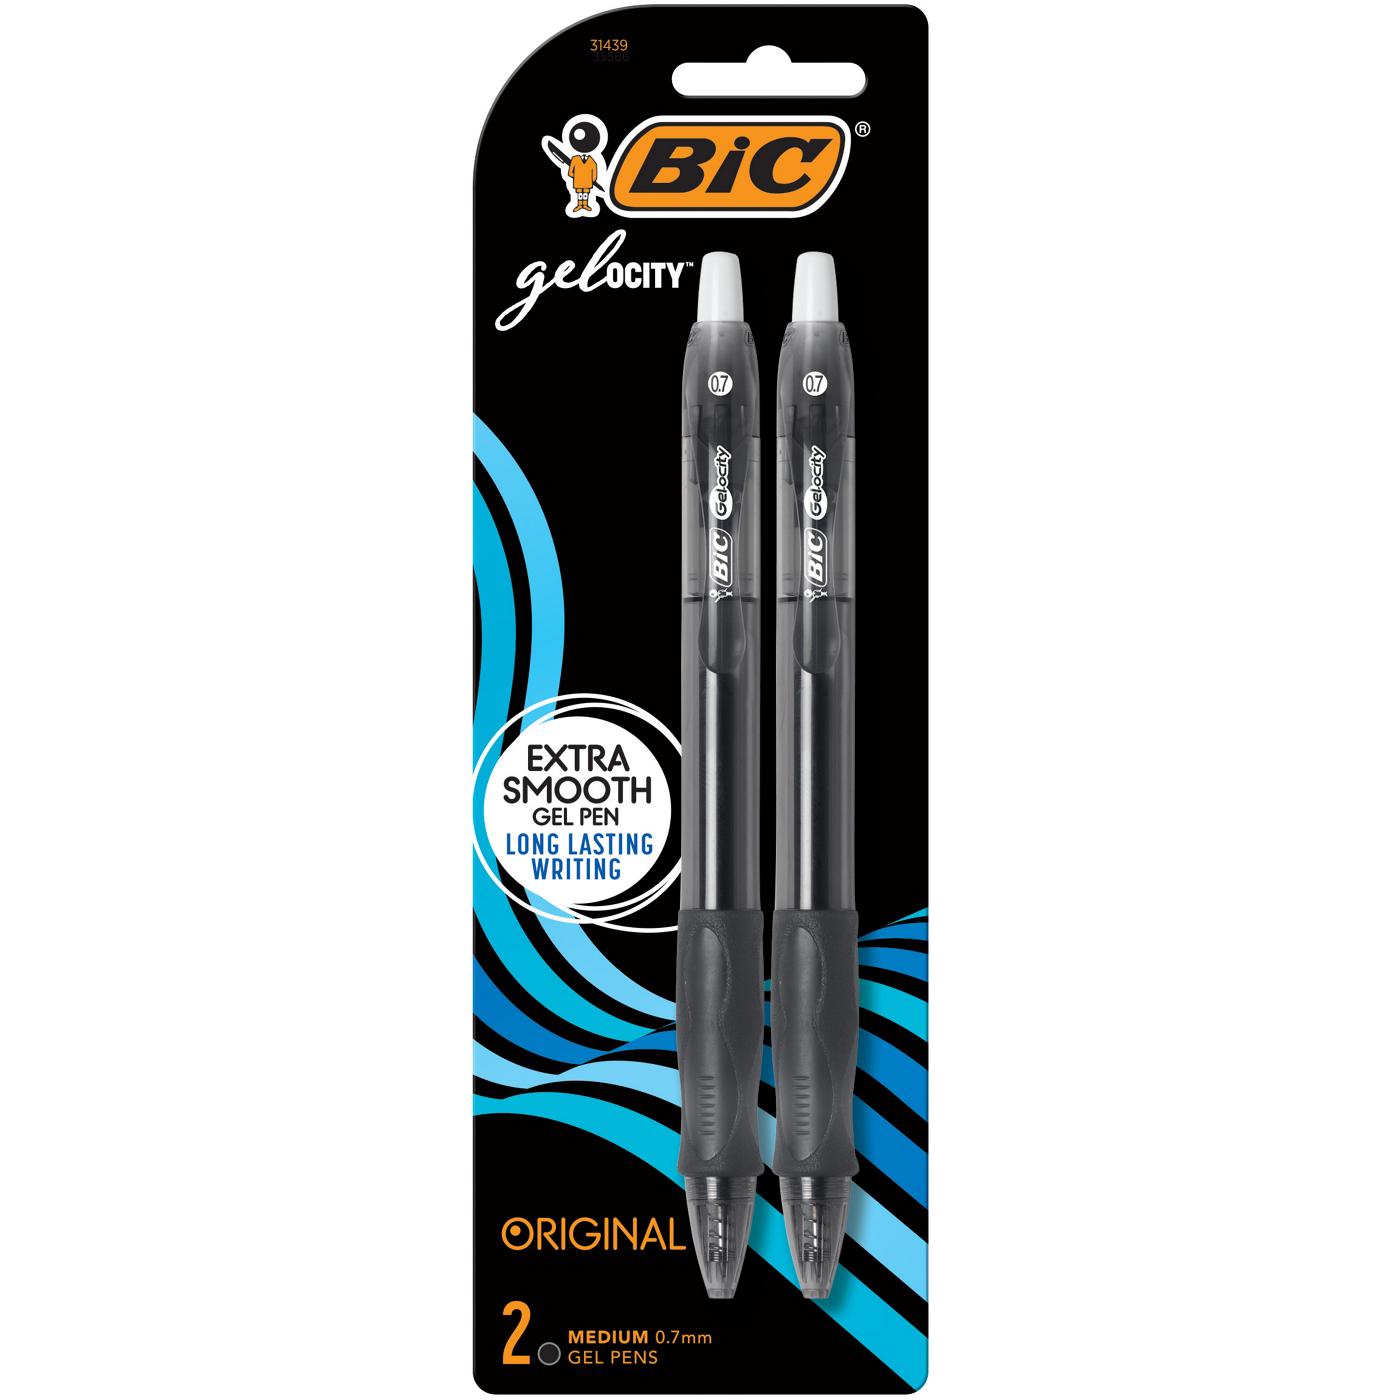 BIC Gel-ocity Original 0.7mm Gel Pens - Black Ink; image 1 of 2